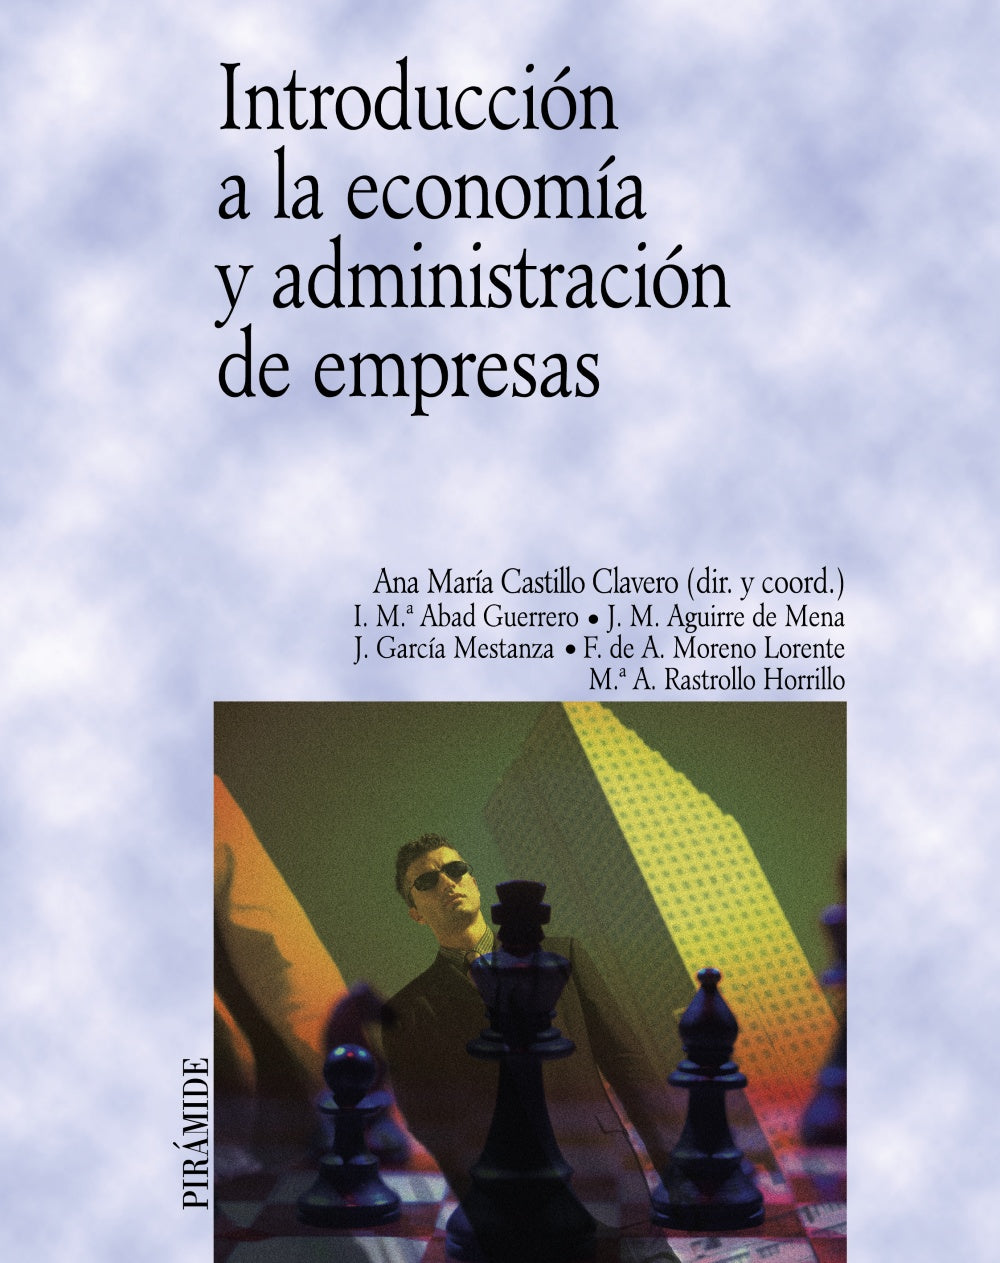 Libro Introduccion A La Economia Piramide Ana Maria Castillo Clavero [Openbox] [Est]